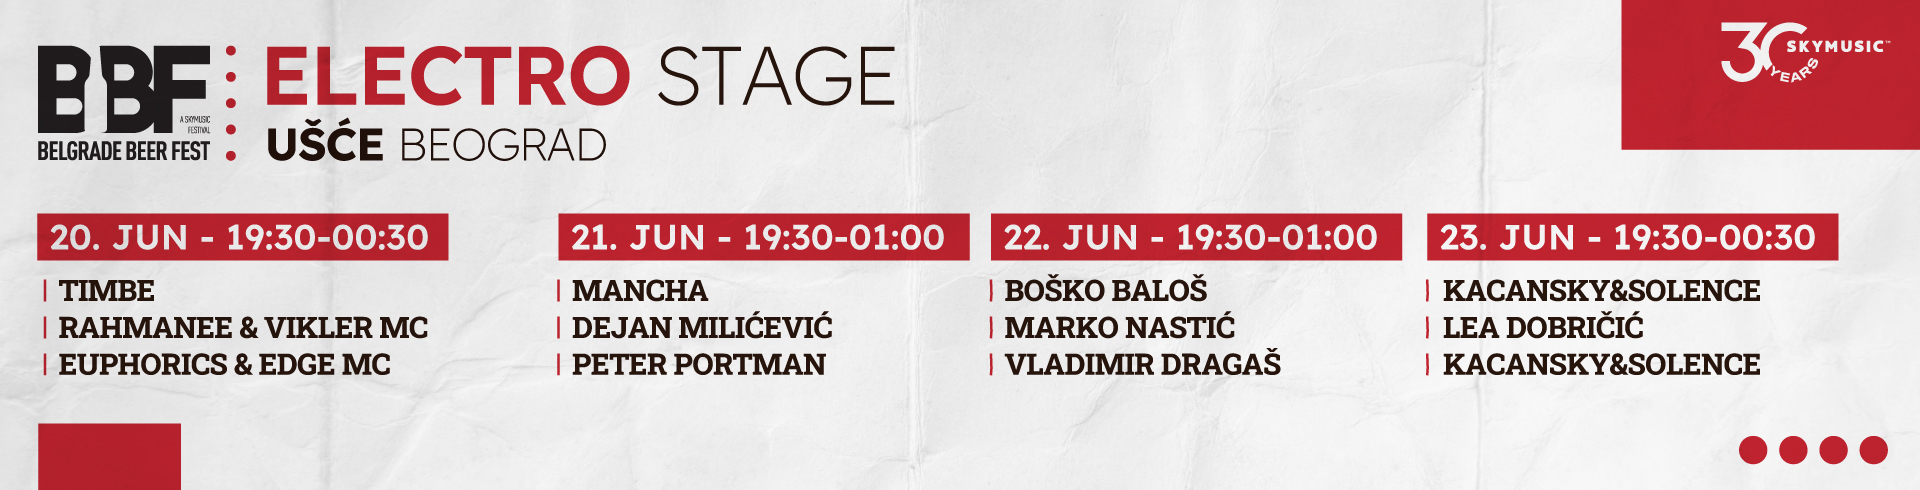 BBF-ELECTRO-Stage-Program-sajt-sa-satnicom-20-23-jun